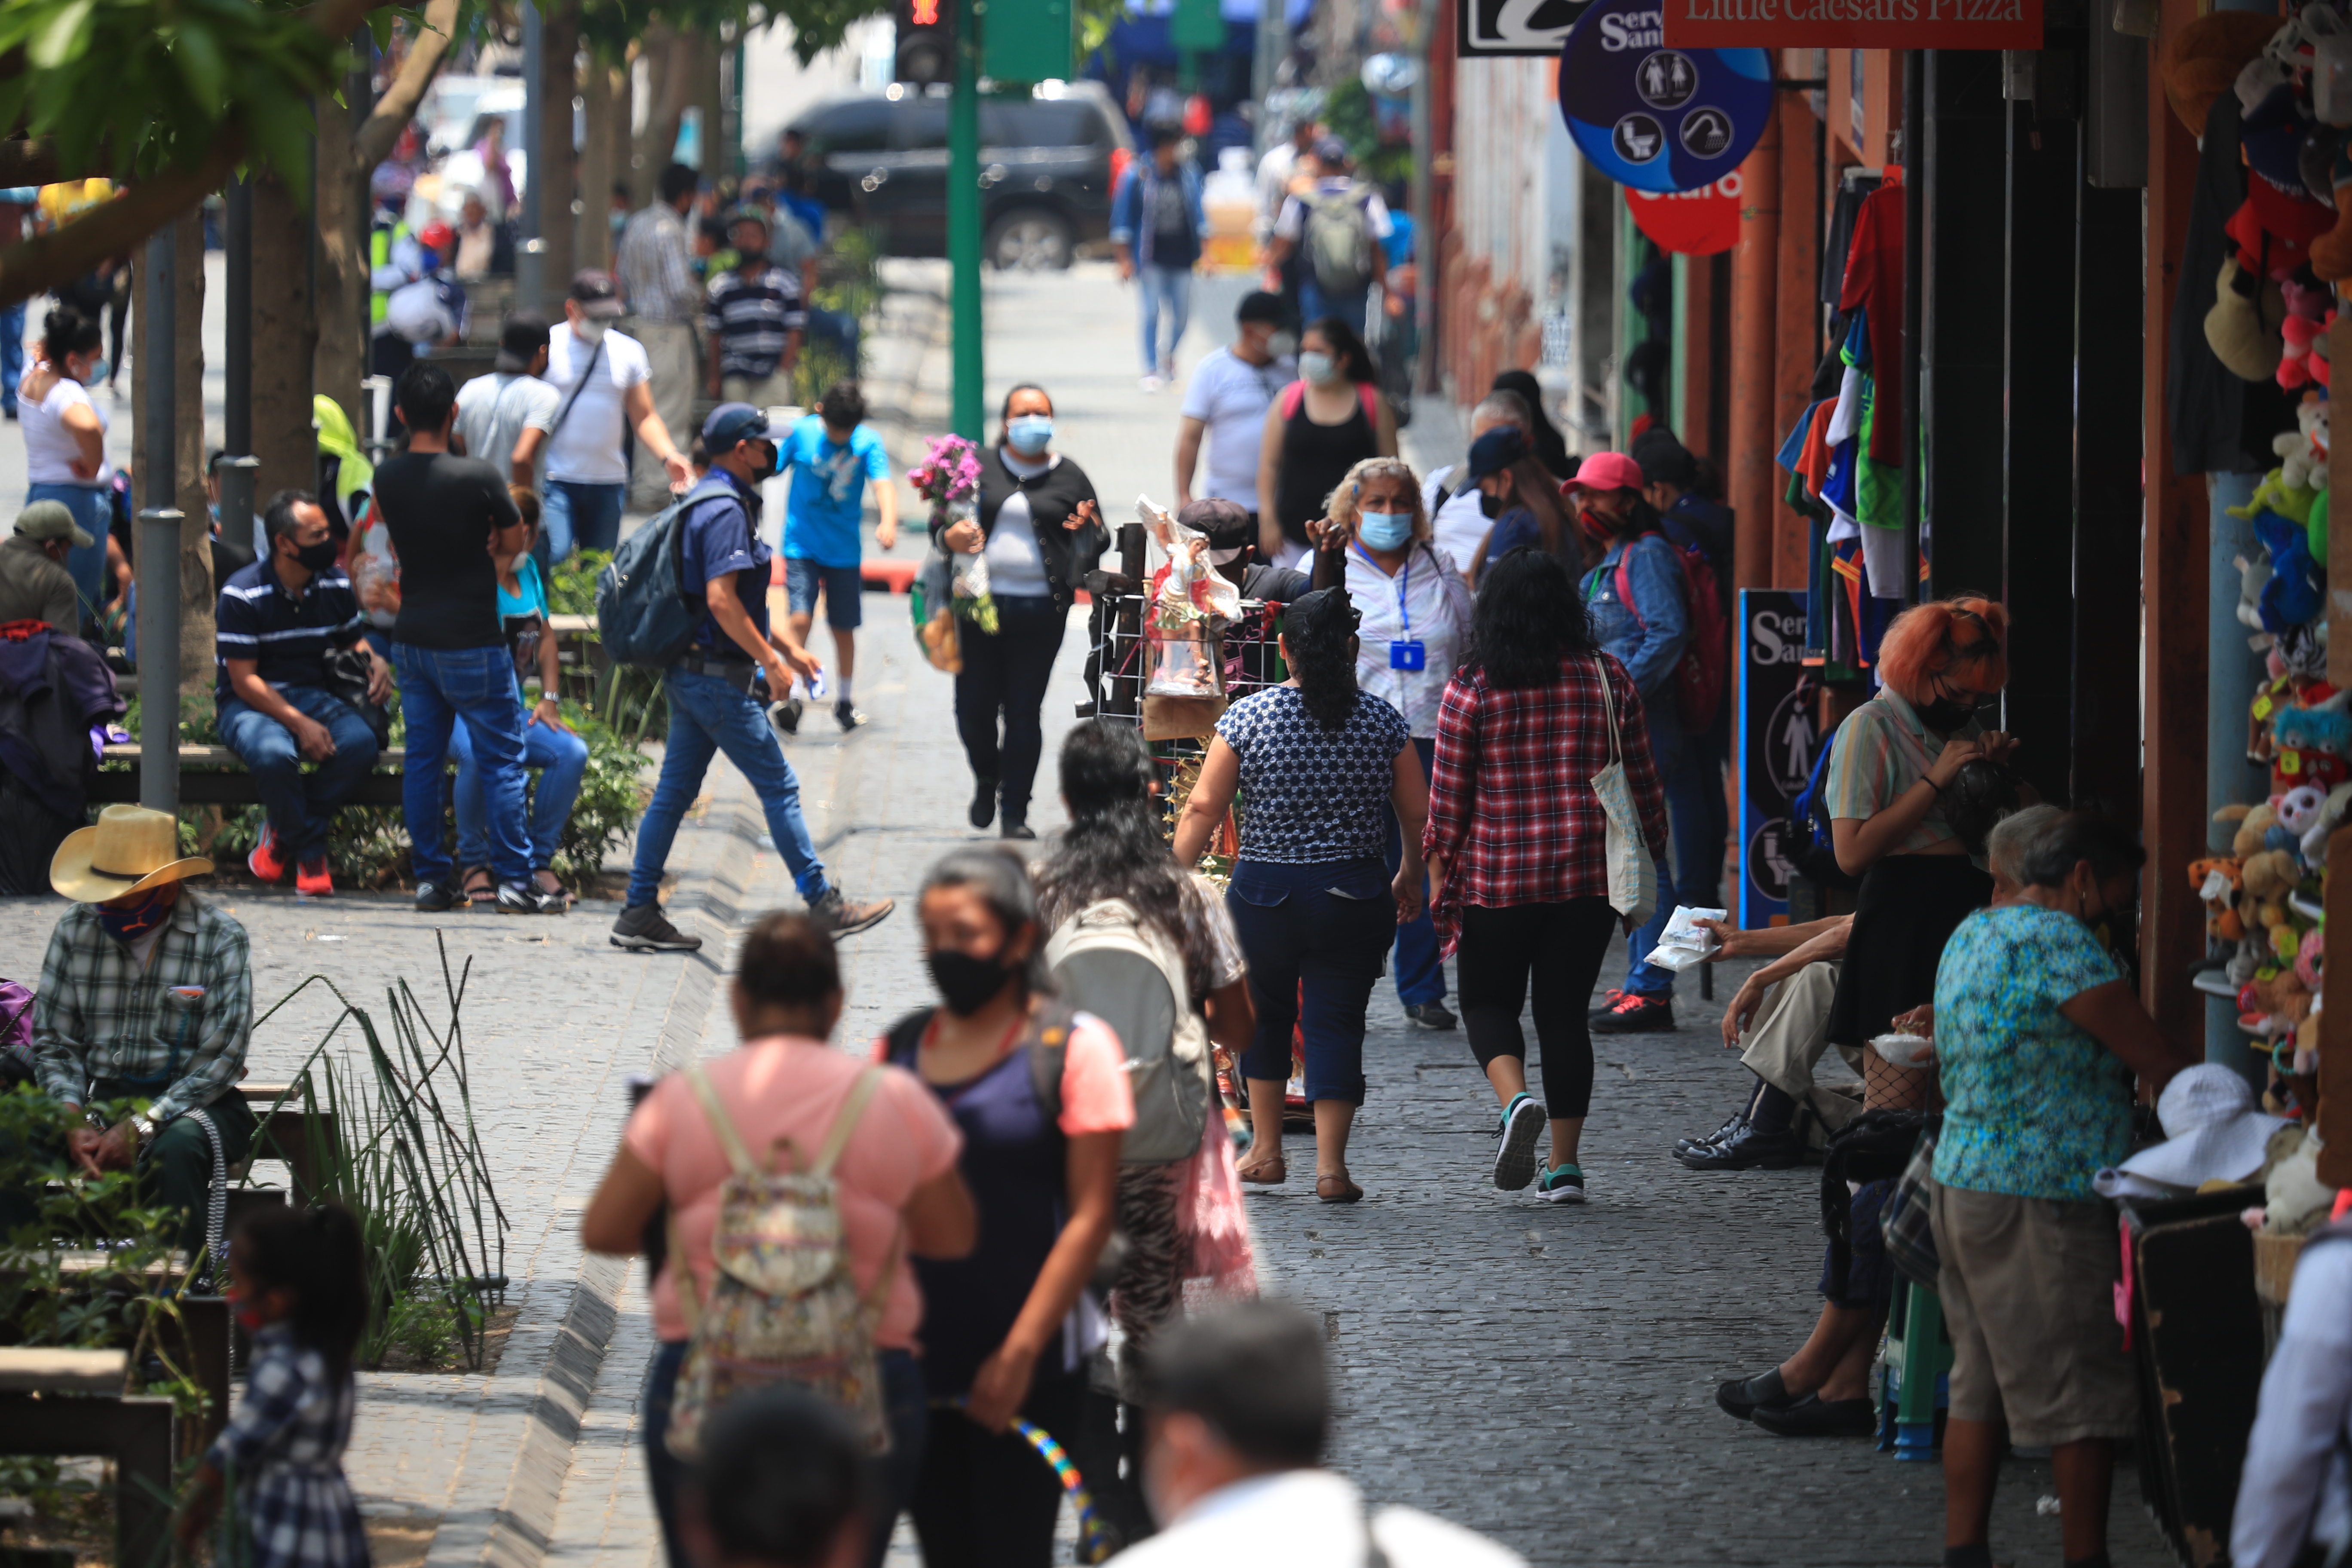 El reporte del Ministerio de Salud de las últimas 24 horas indica que hay más de 14 mil casos activos de covid-19 en el país. (Foto Prensa Libre: Carlos Hernández)